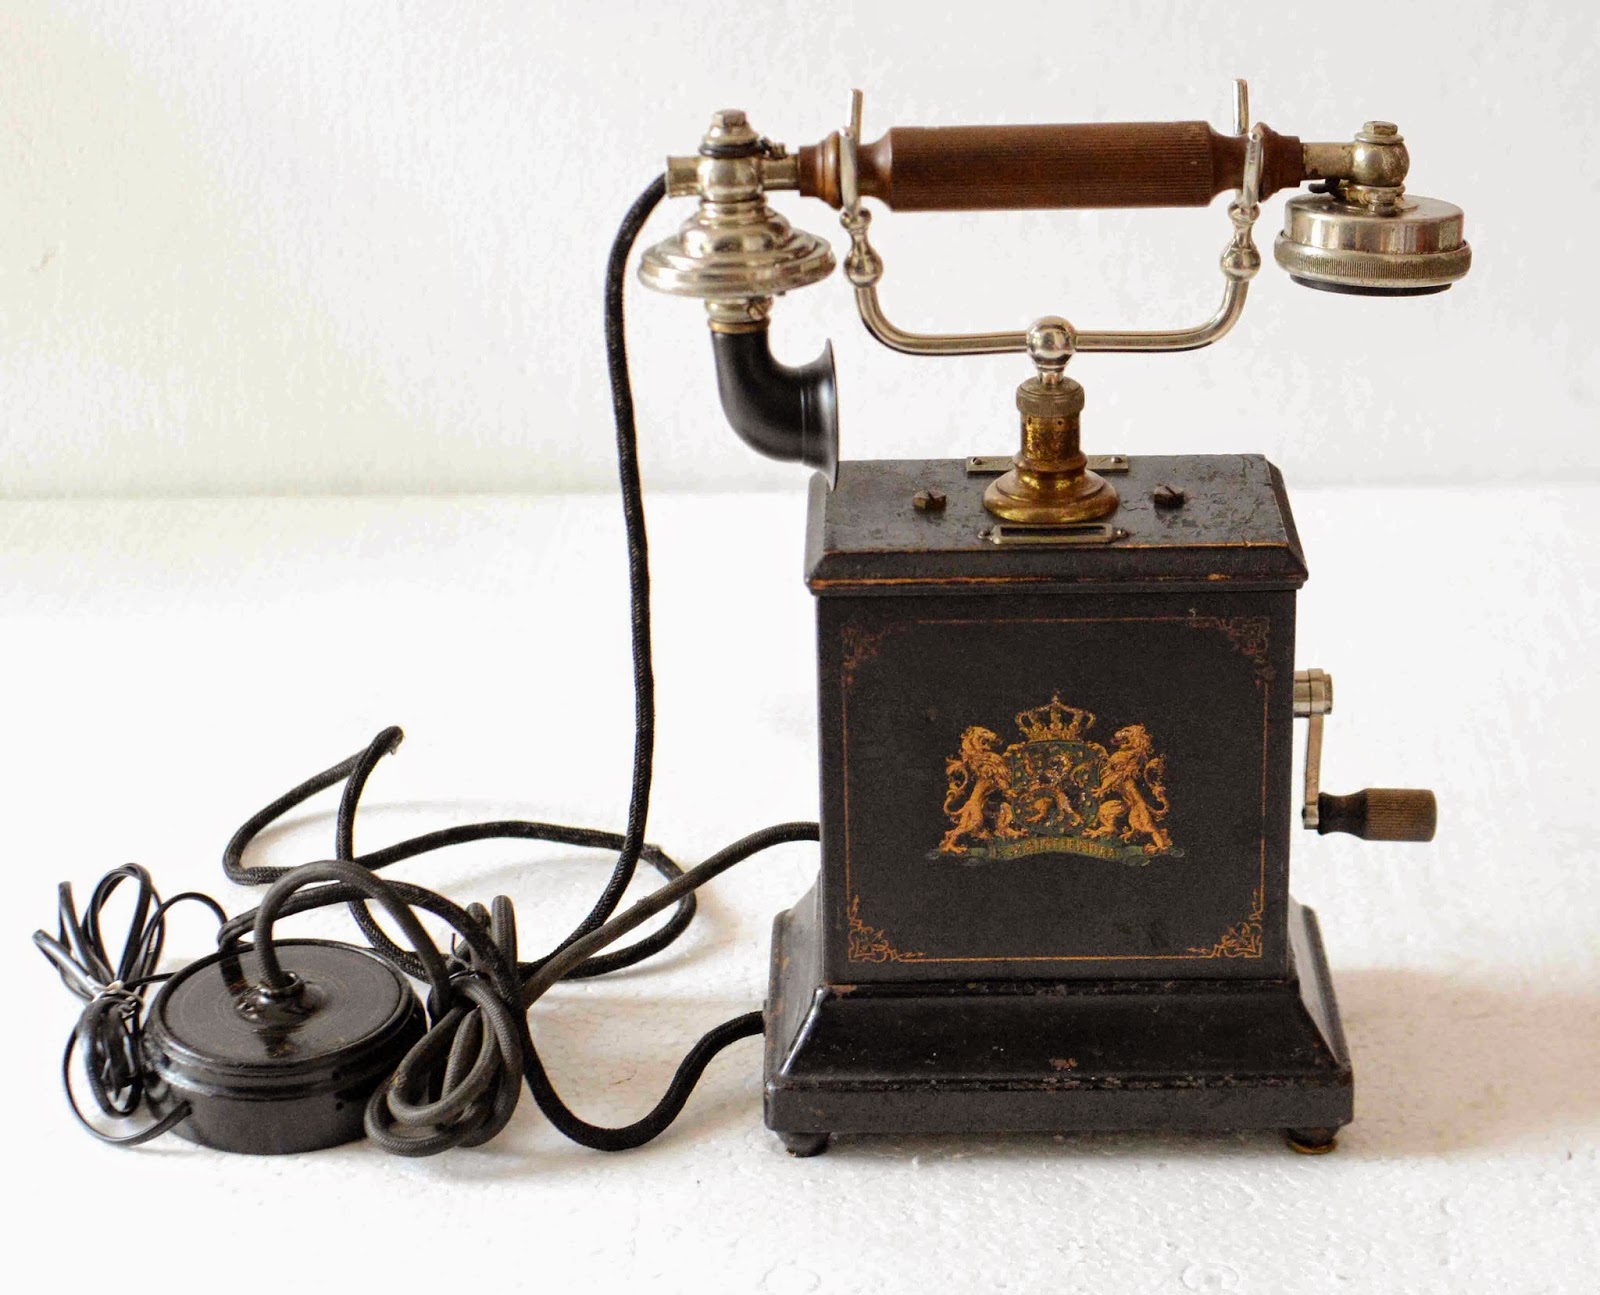 Первый телефон екатеринбург. Телефонный аппарат фирмы Эриксон 1895 год. Телефонный аппарат Бойля 1896. Телефонный аппарат Bell 300 Дрейфус. Телефонный аппарат 19 век Белл.